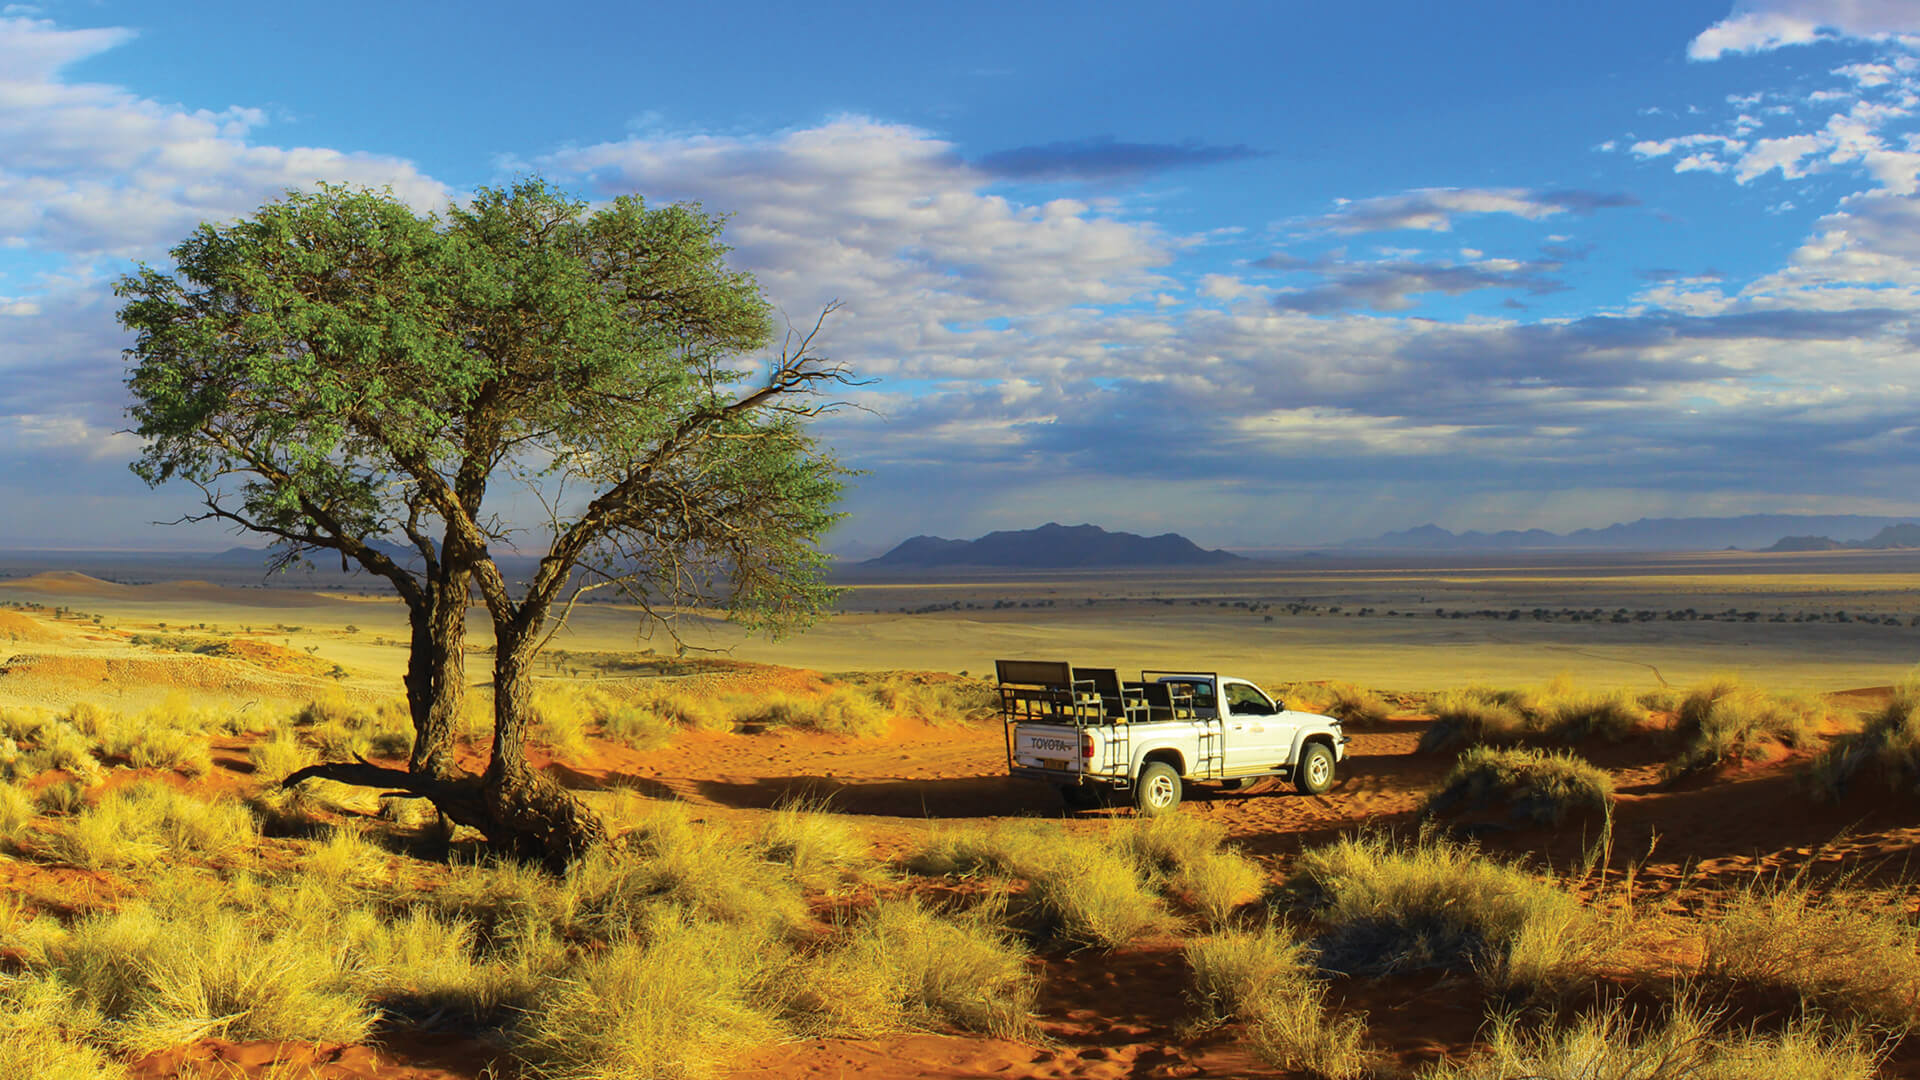 Safari holidays in Namibia with NamibStar